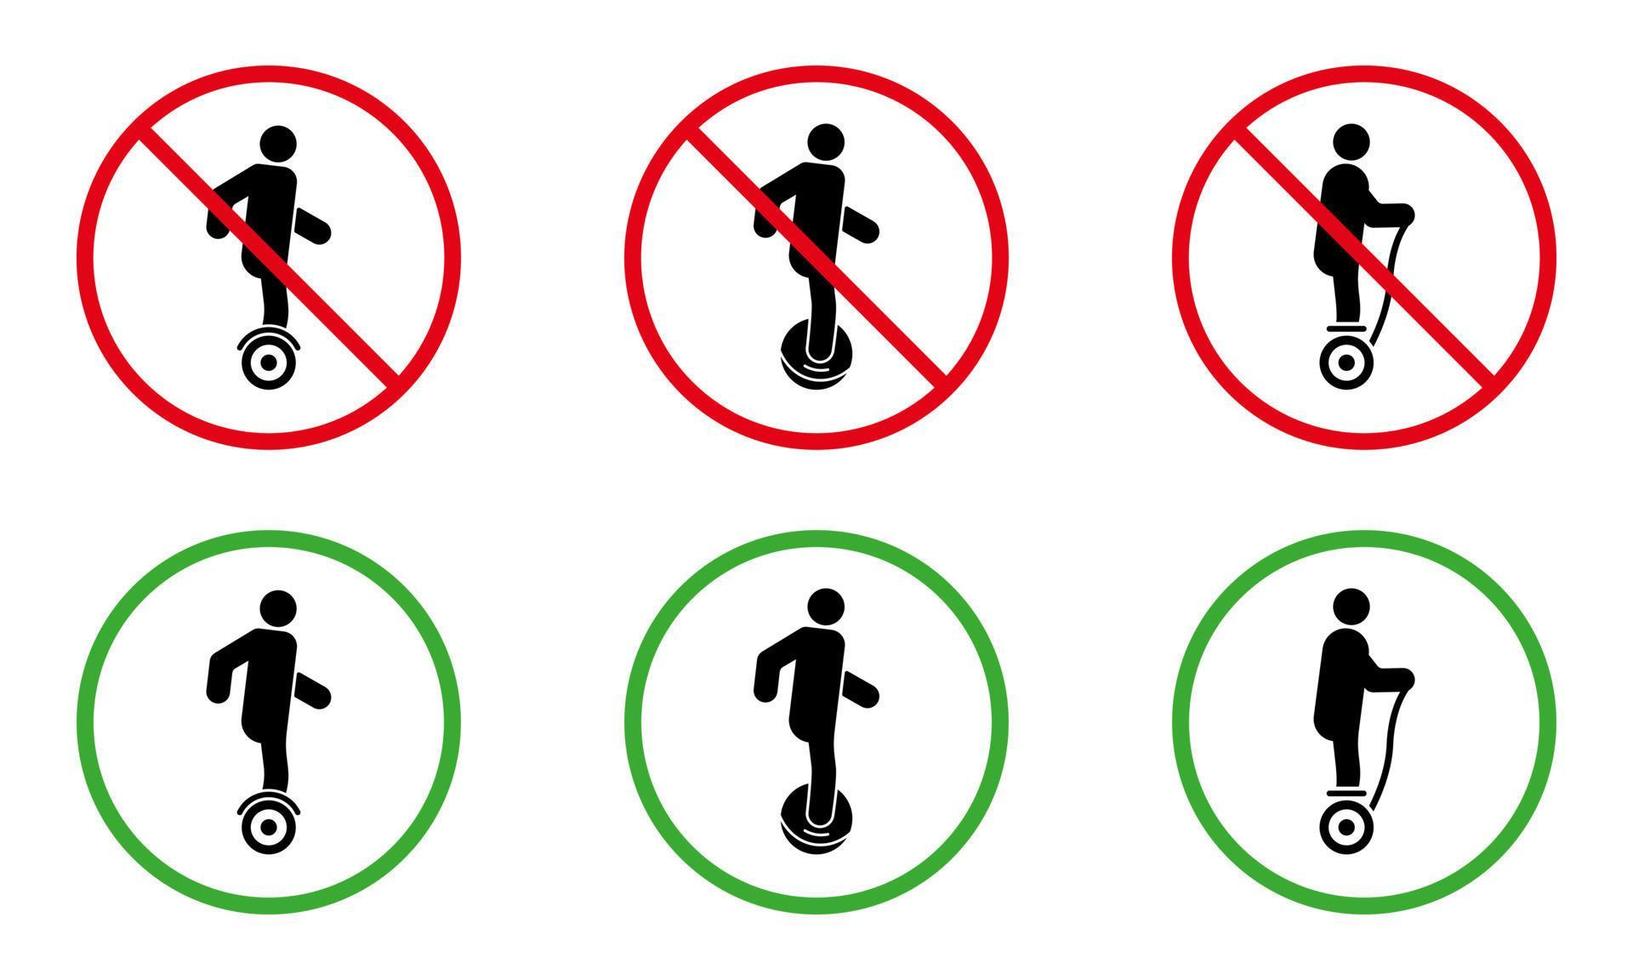 vietare il set di pittogrammi giroscooter hoverboard monociclo elettrico. vietare l'icona del trasporto di pericolo. simbolo di avviso al passaggio del mouse. nessun segno di scooter giroscopico consentito. vietare la monoruota. illustrazione vettoriale isolata.